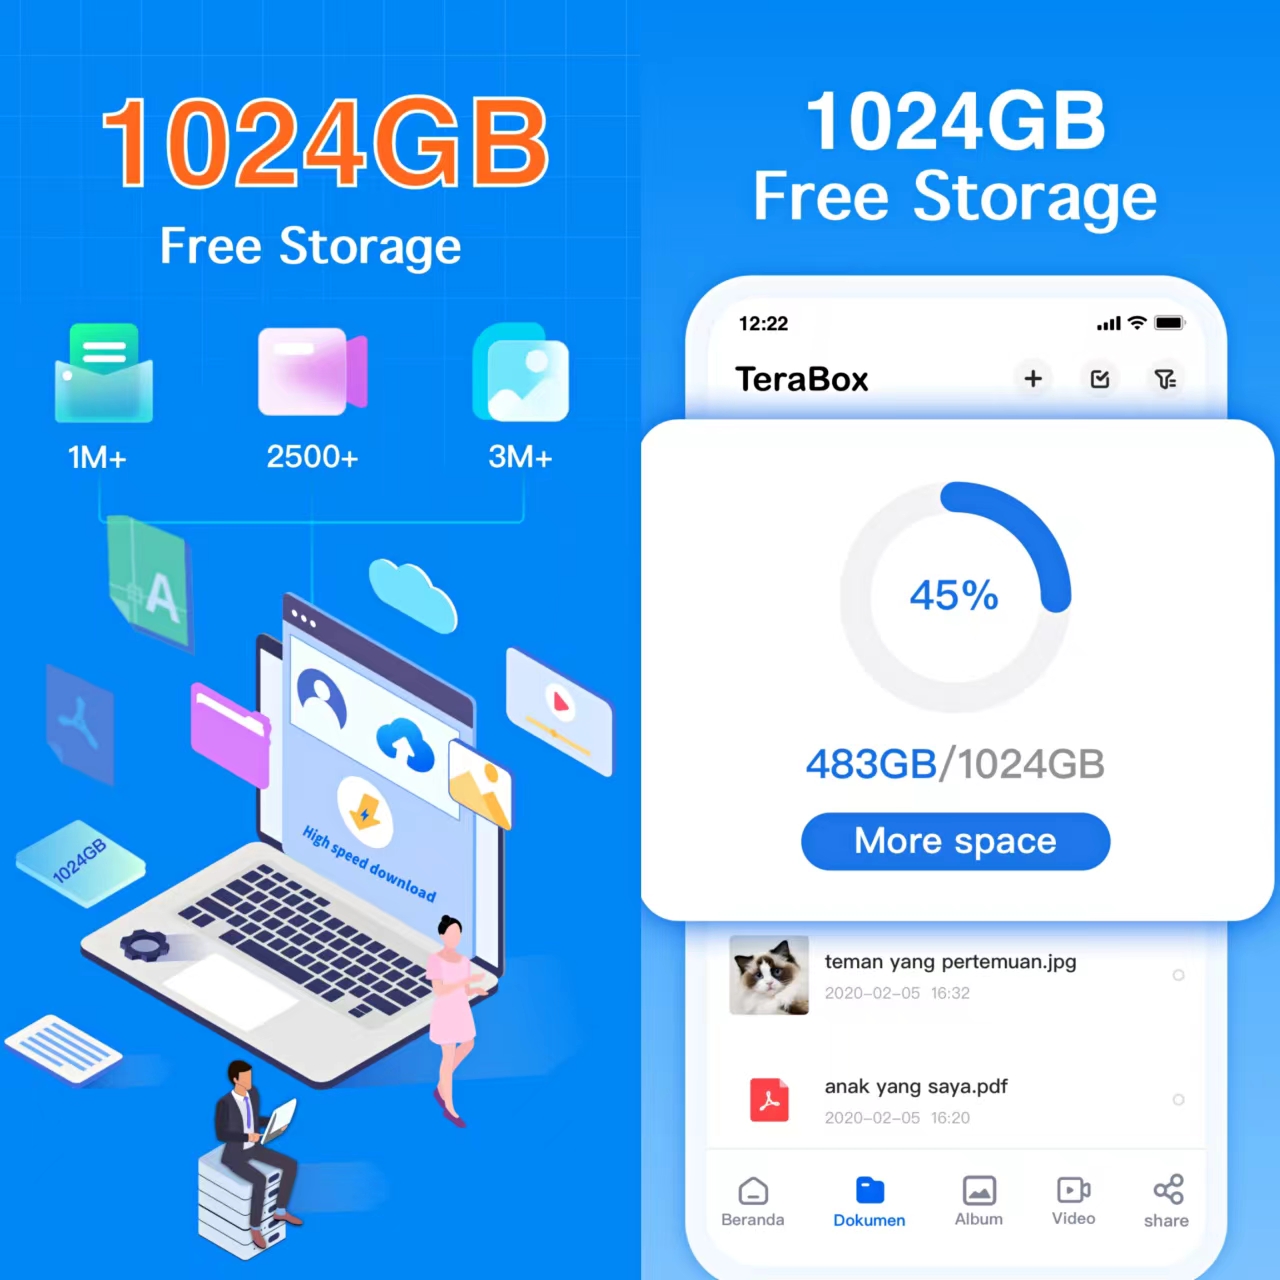 1024GB Free storage